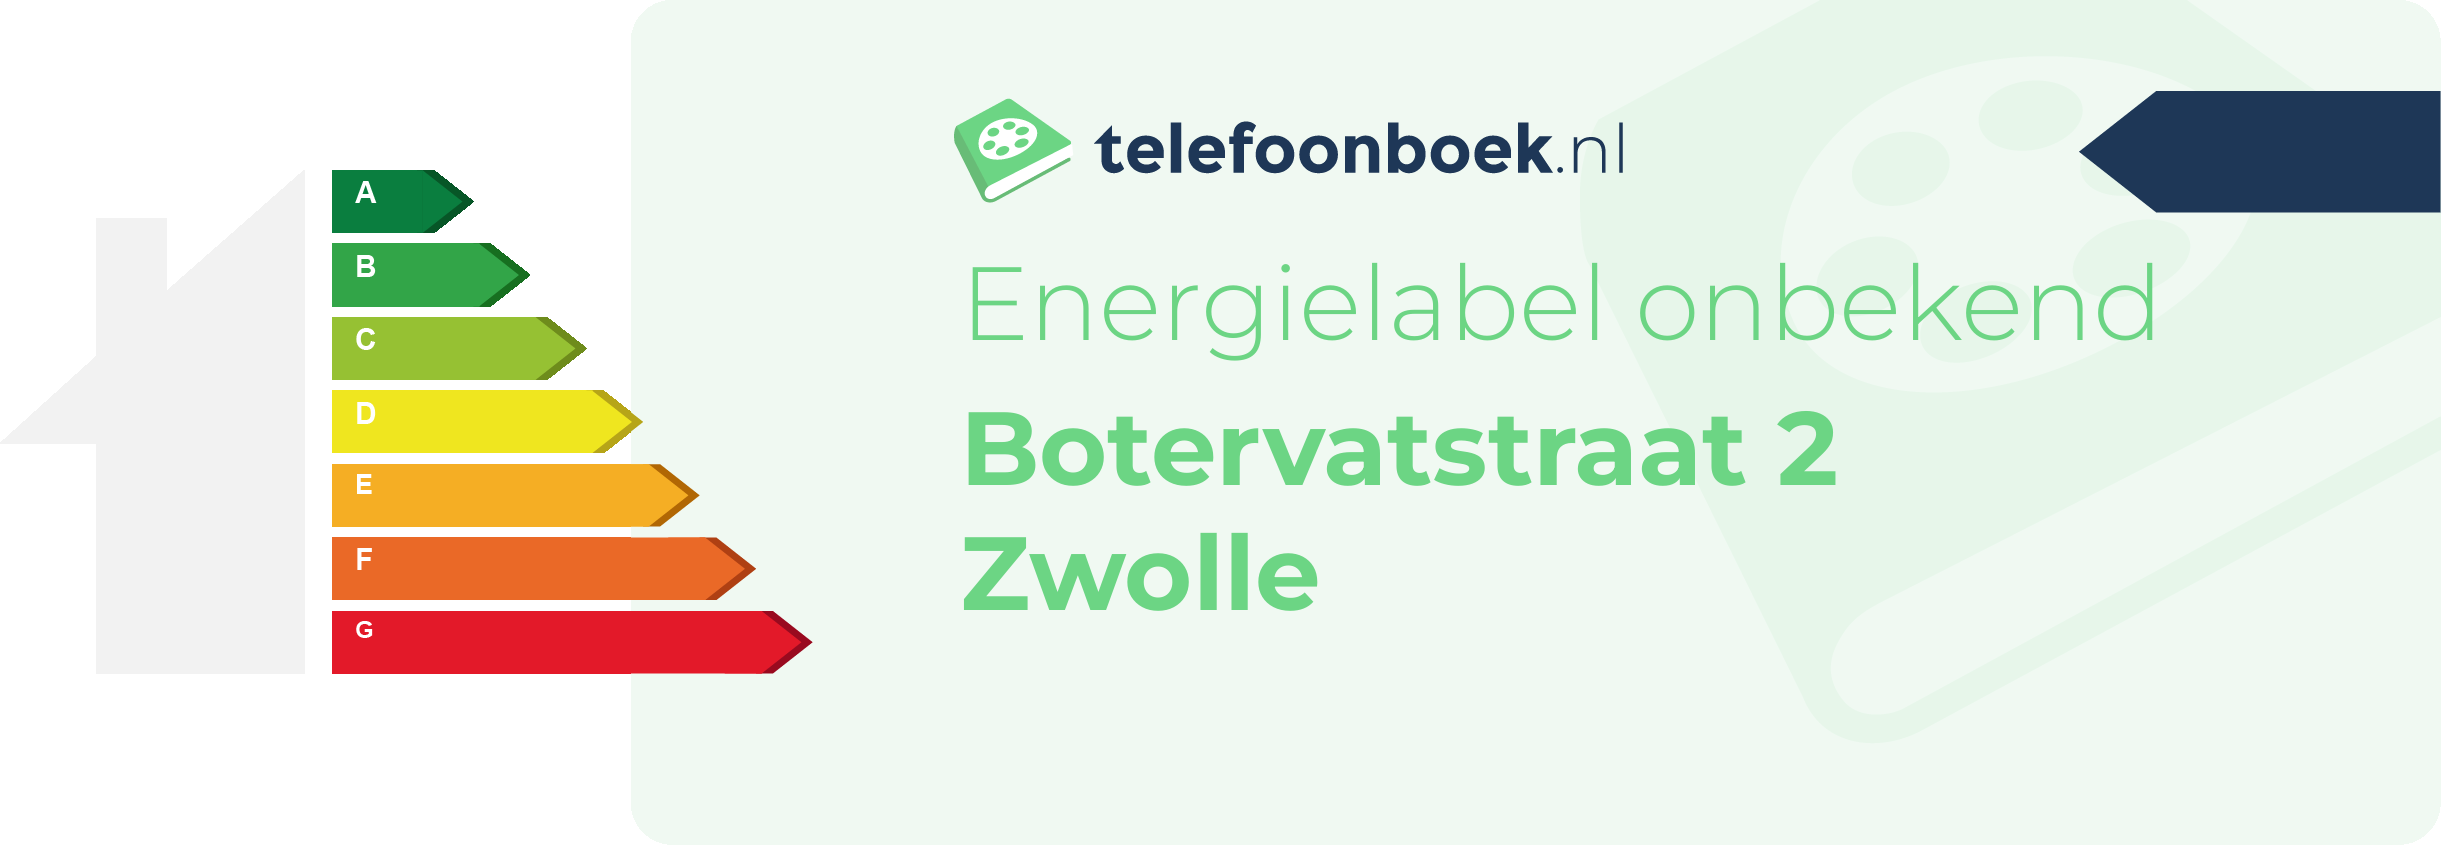 Energielabel Botervatstraat 2 Zwolle